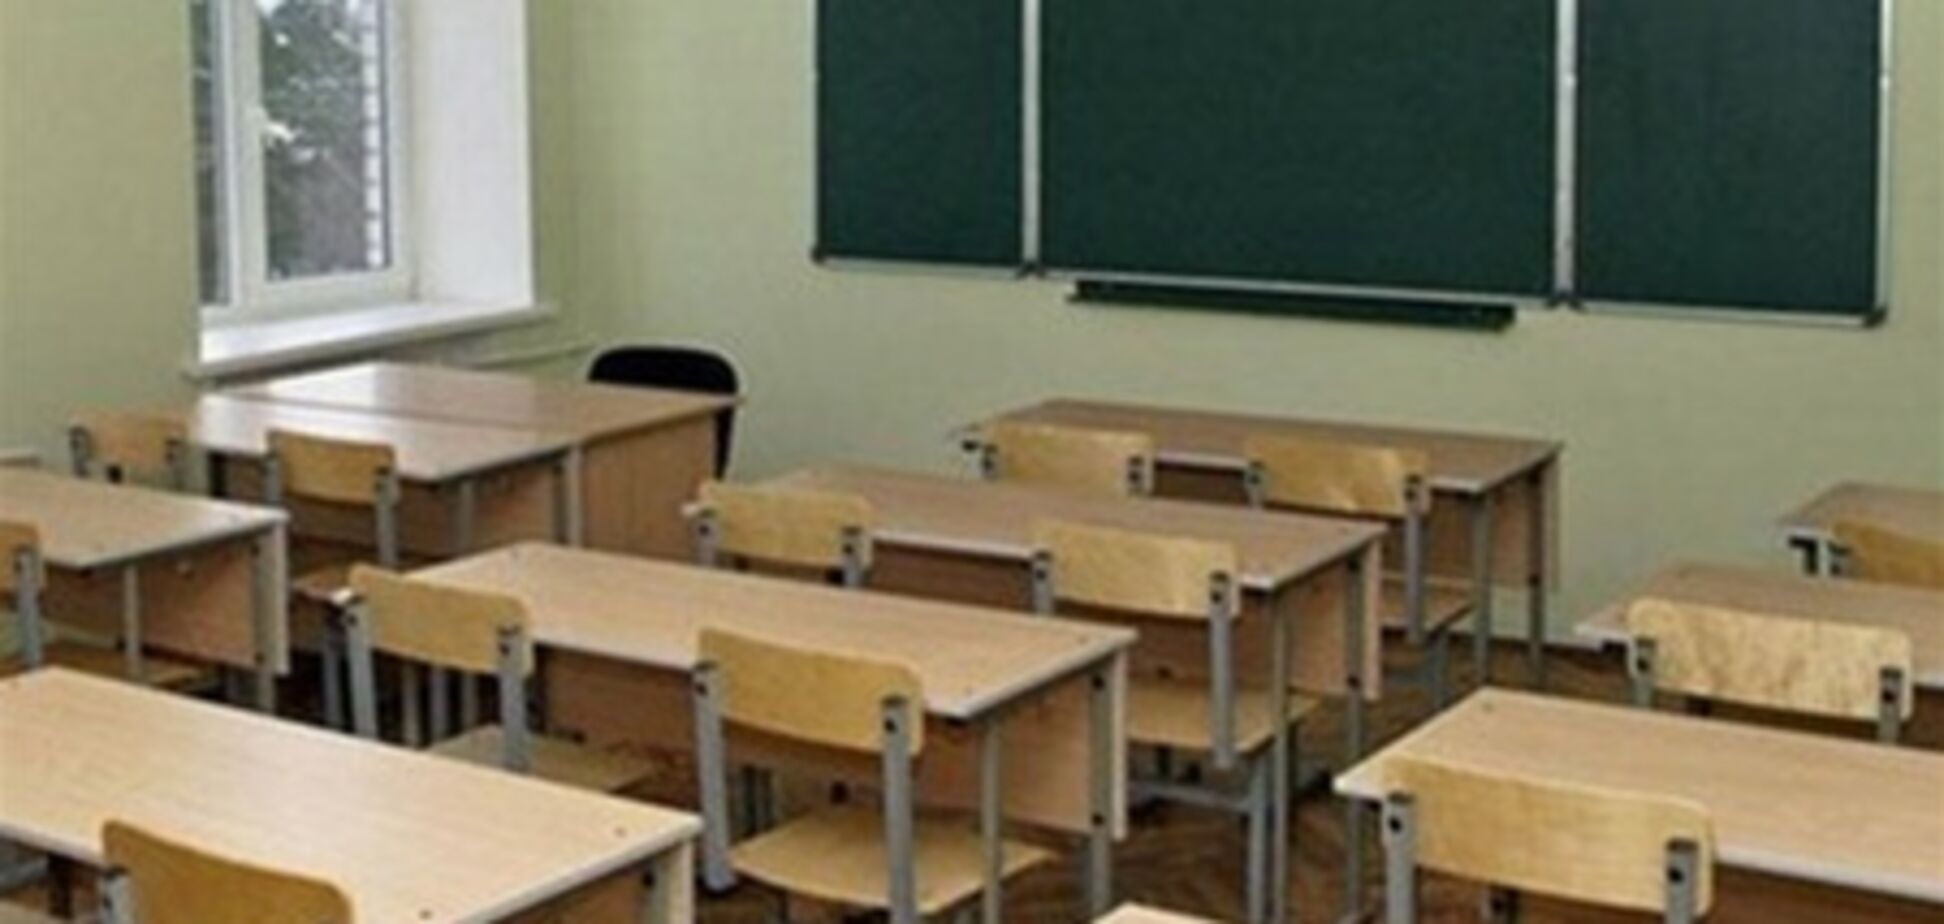 Більше 150 шкіл закриють цього року - екс-міністр освіти